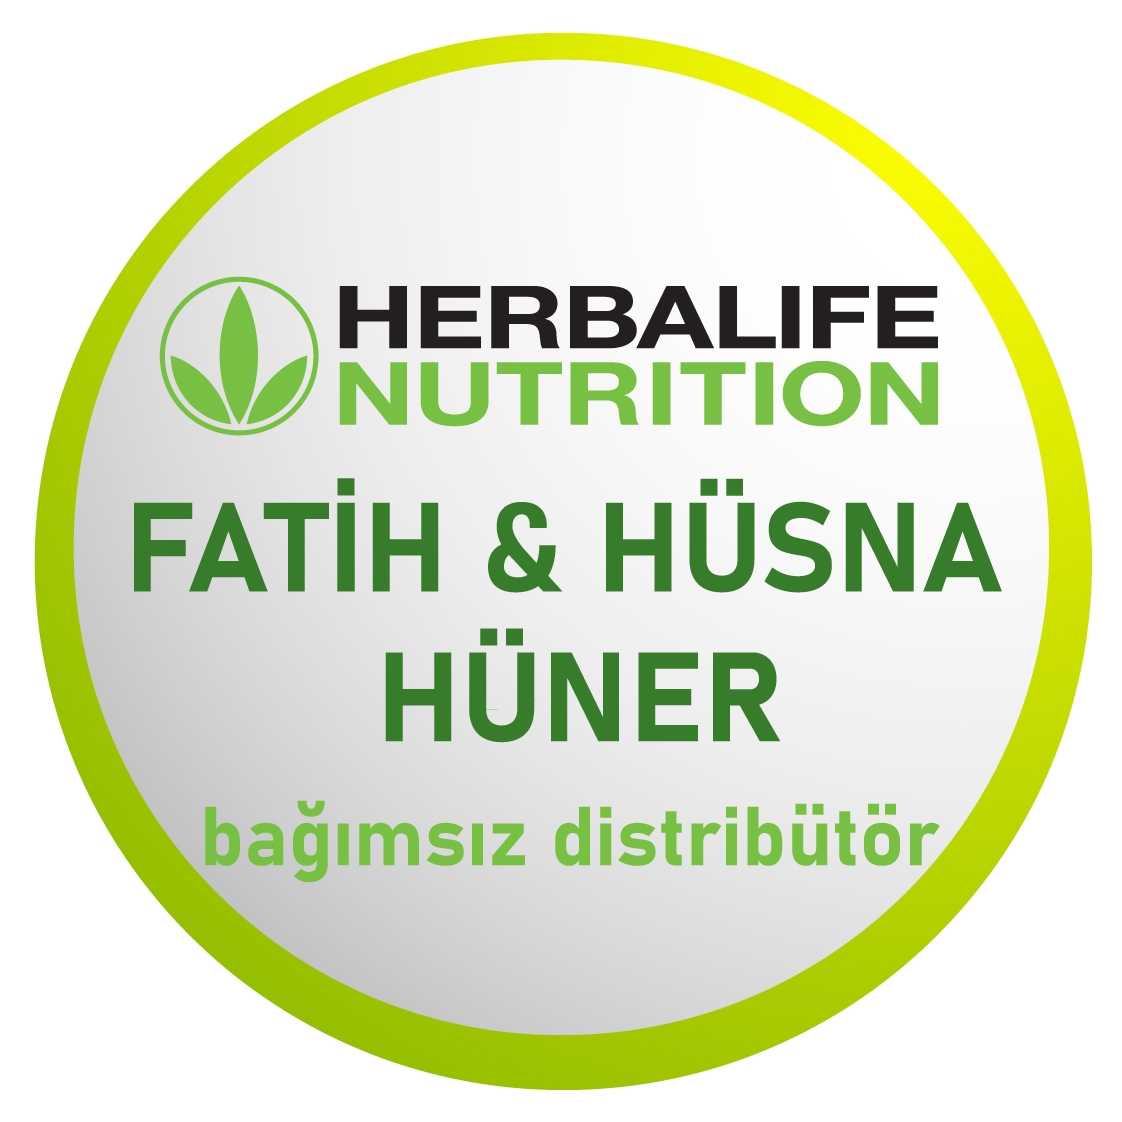 Fatih ve Hüsna Hüner - İzmir Herbalife Distribütörü Logo